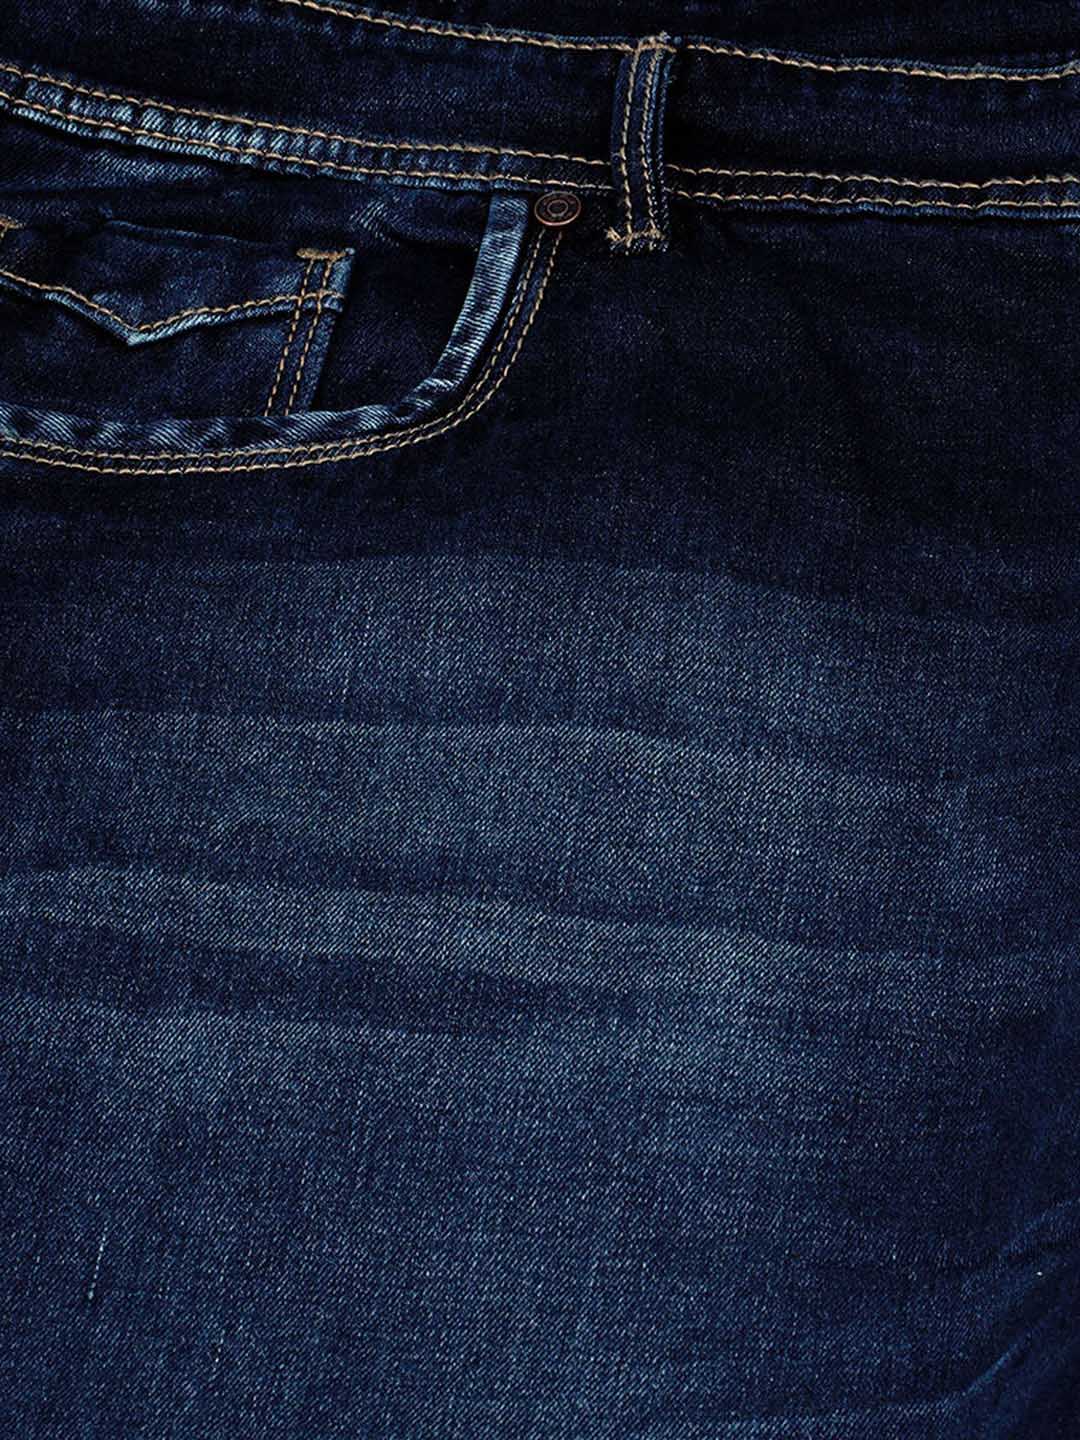 bottomwear/jeans/JPJ12113/jpj12113-2.jpg